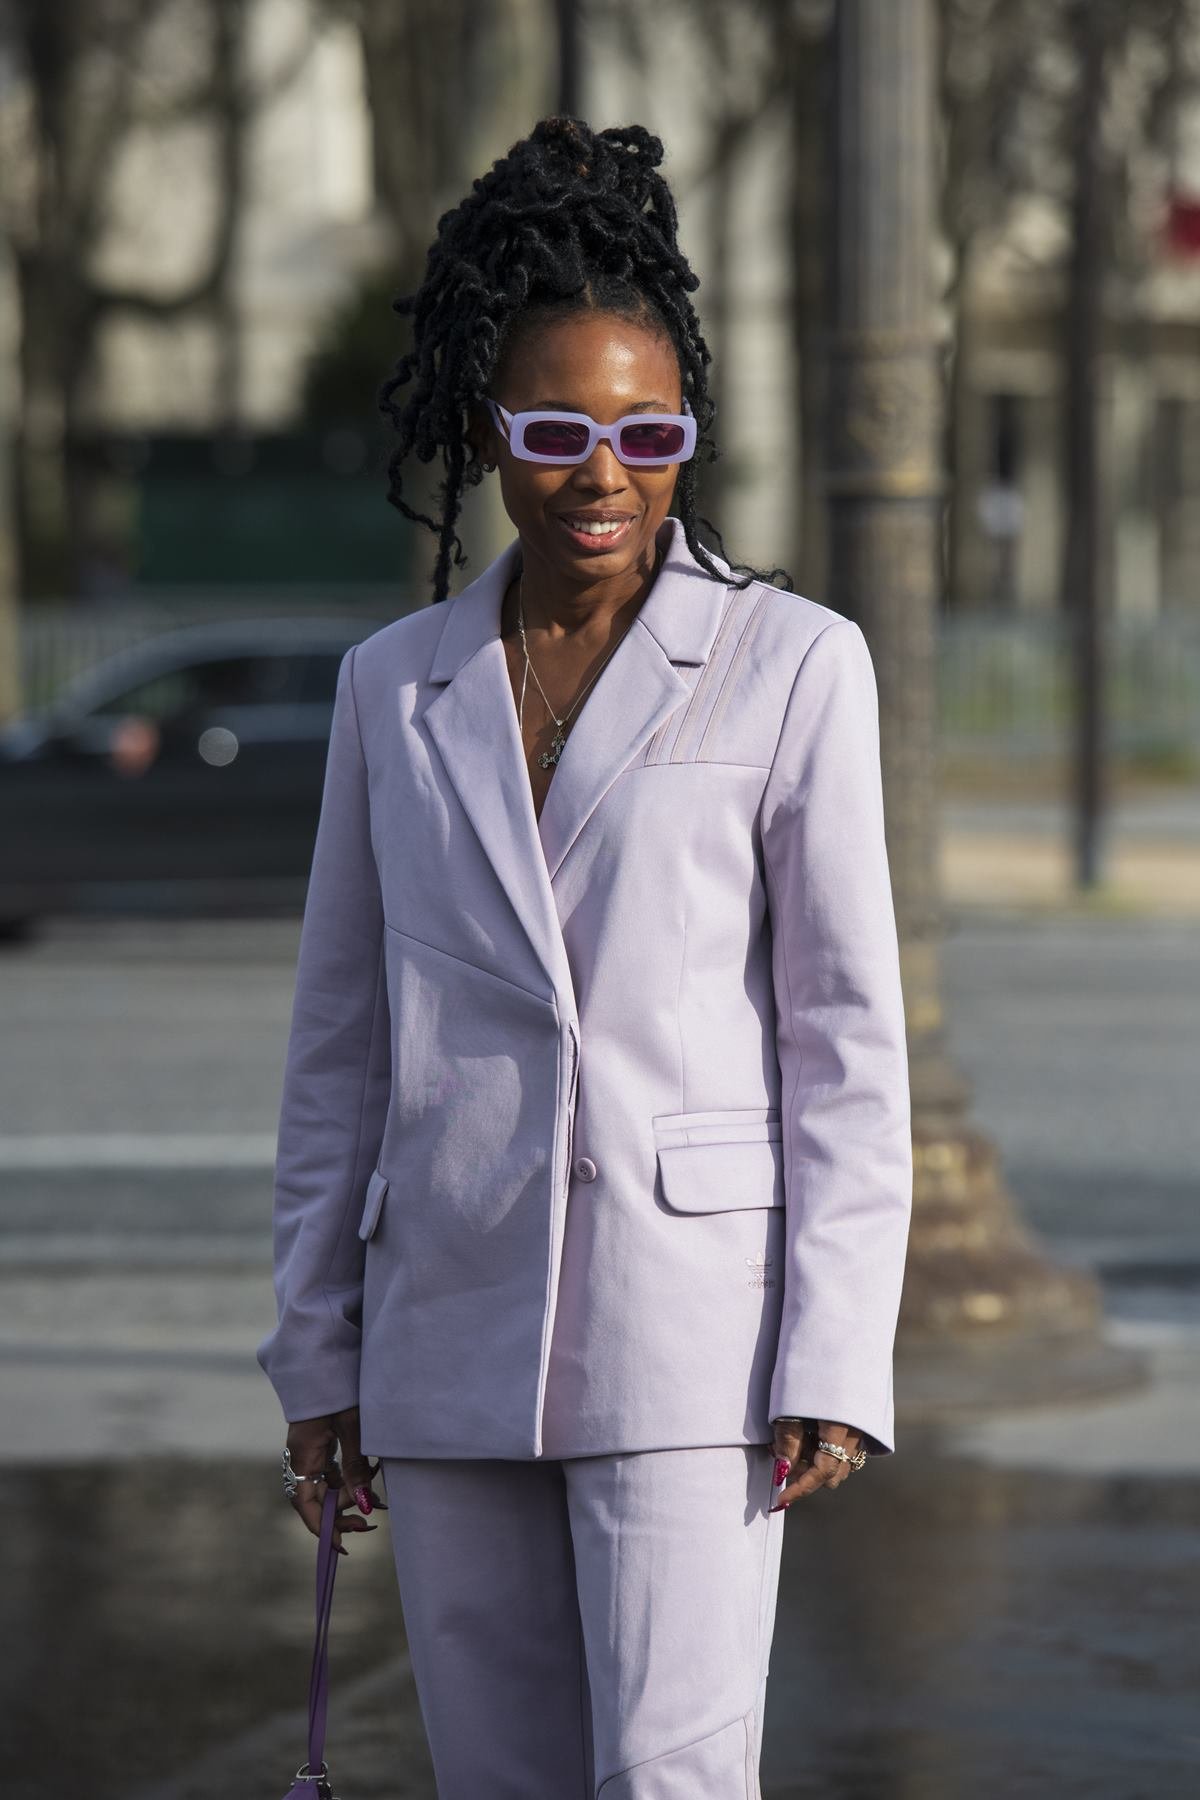 A stylist Zerina Akers, uma mulher negra e jovem, de cabelo trançado amarrado, posa para foto nas ruas de Paris durante a semana de moda. Ela usa um conjunto de blazer e calça, ambos na cor lilás, e um óculos de sol com armação roxa. - Metrópoles